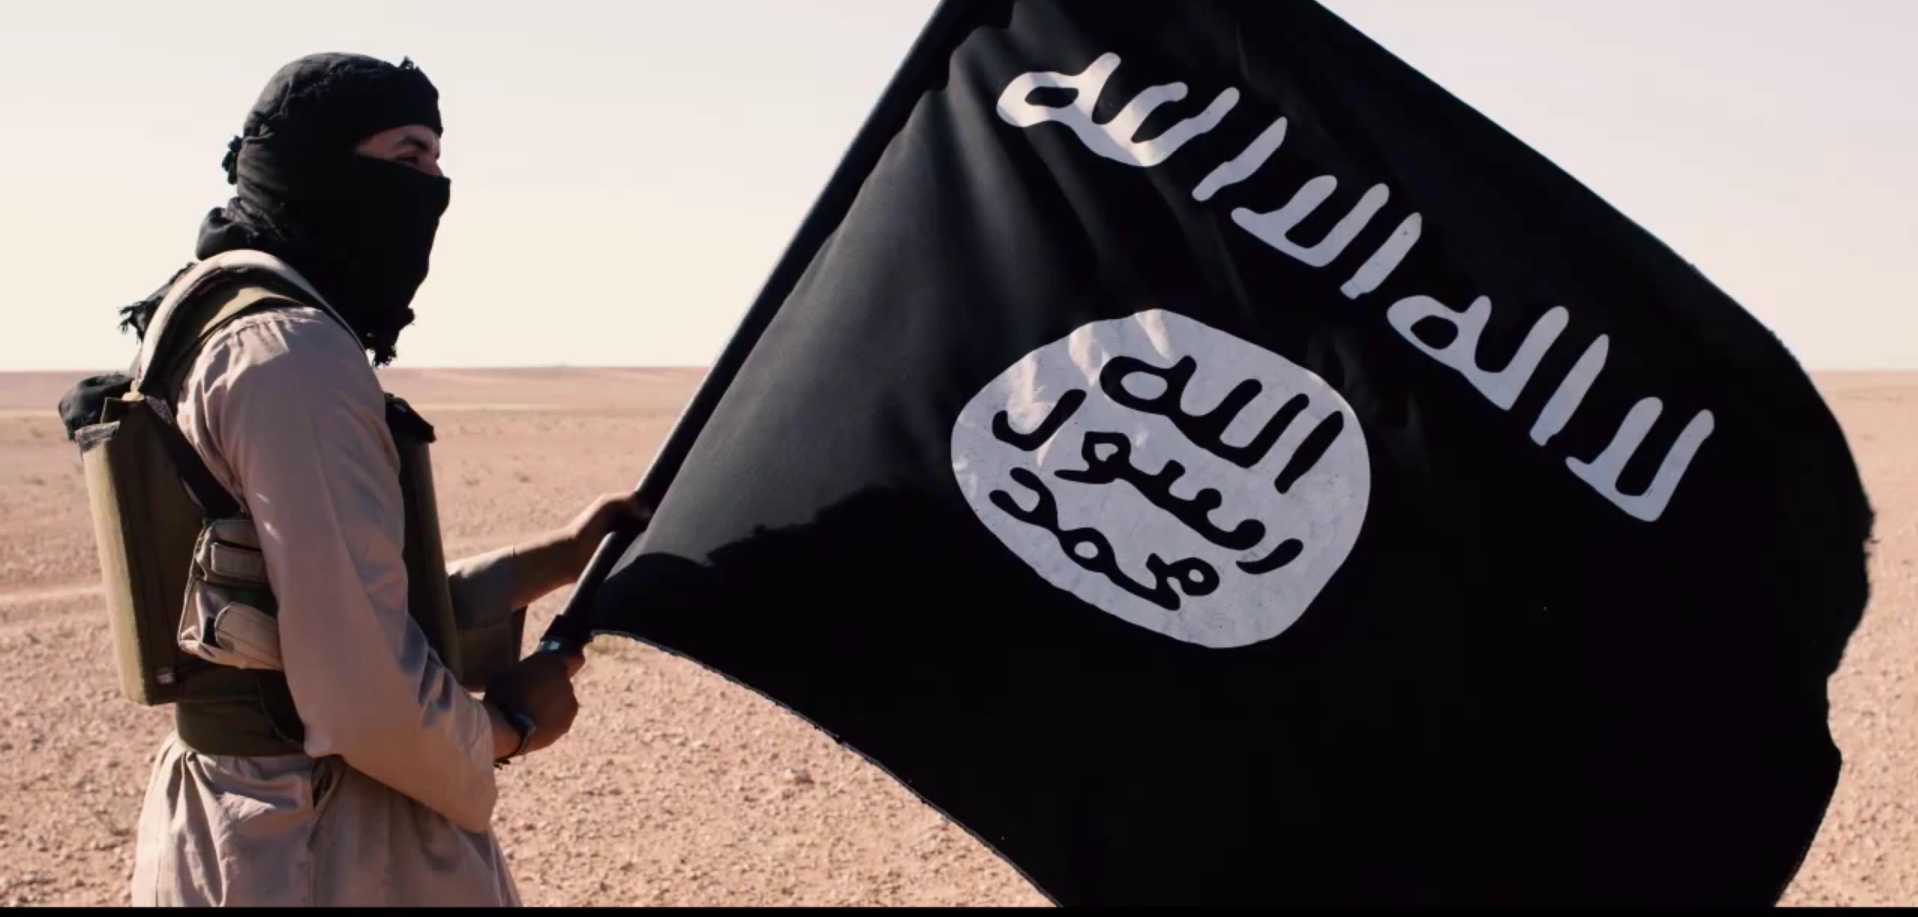 Игил по английски. Флаг ИГИЛ. Исламское государство террористическая организация флаг.